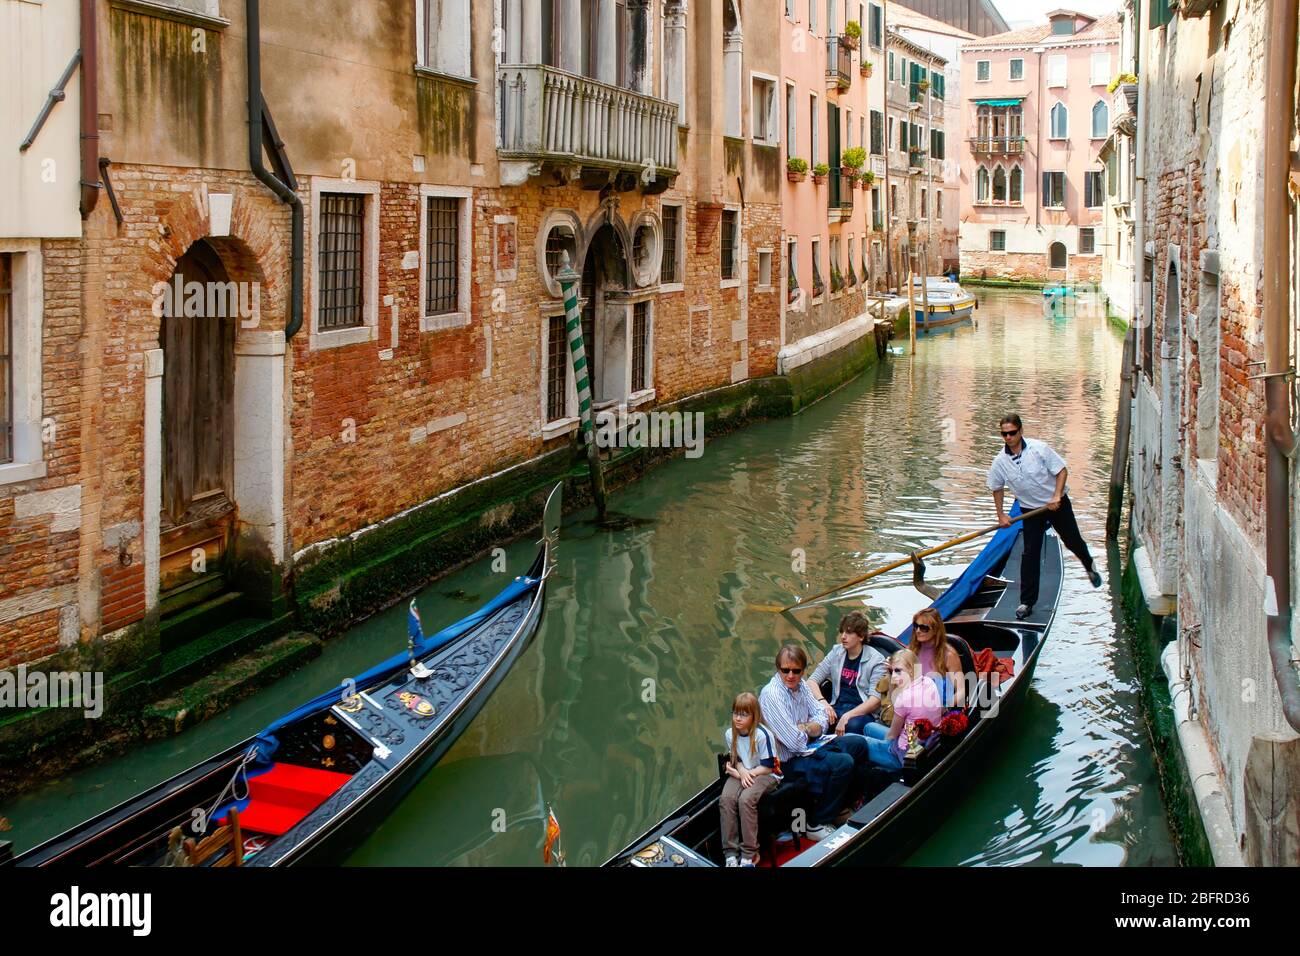 Zwei Gondeln, die in einem kleinen Seitenkanal vorbeifahren, während die Familie, die in einem reitet, die umliegenden Gebäude betrachtet. Venedig, Italien NMR Stockfoto